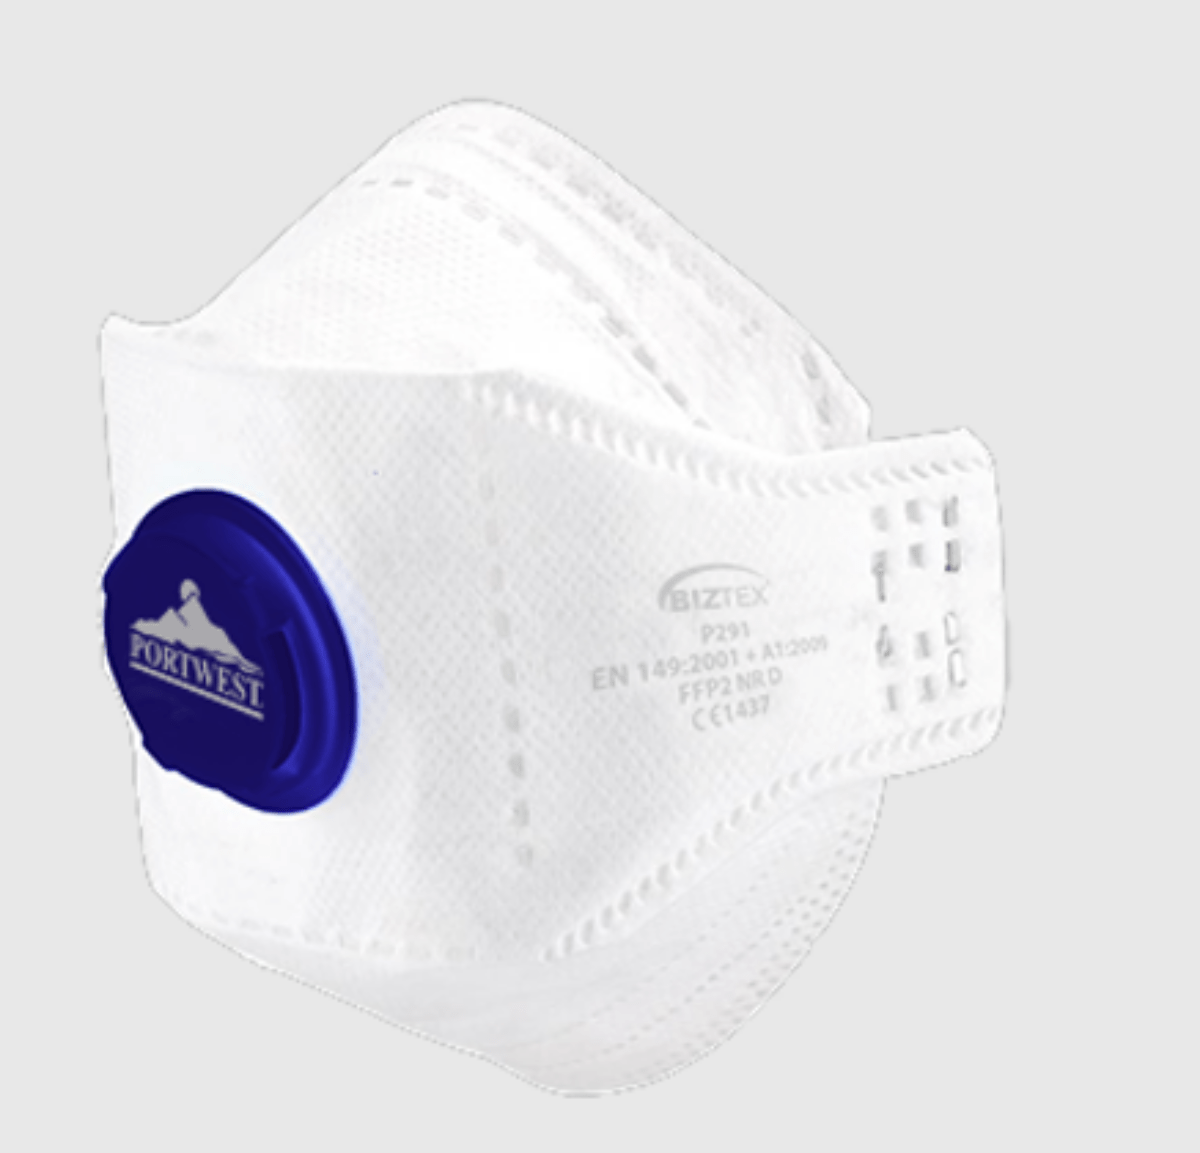 Masques à poussière jetables FFP2 Moldex - Equipement de protection